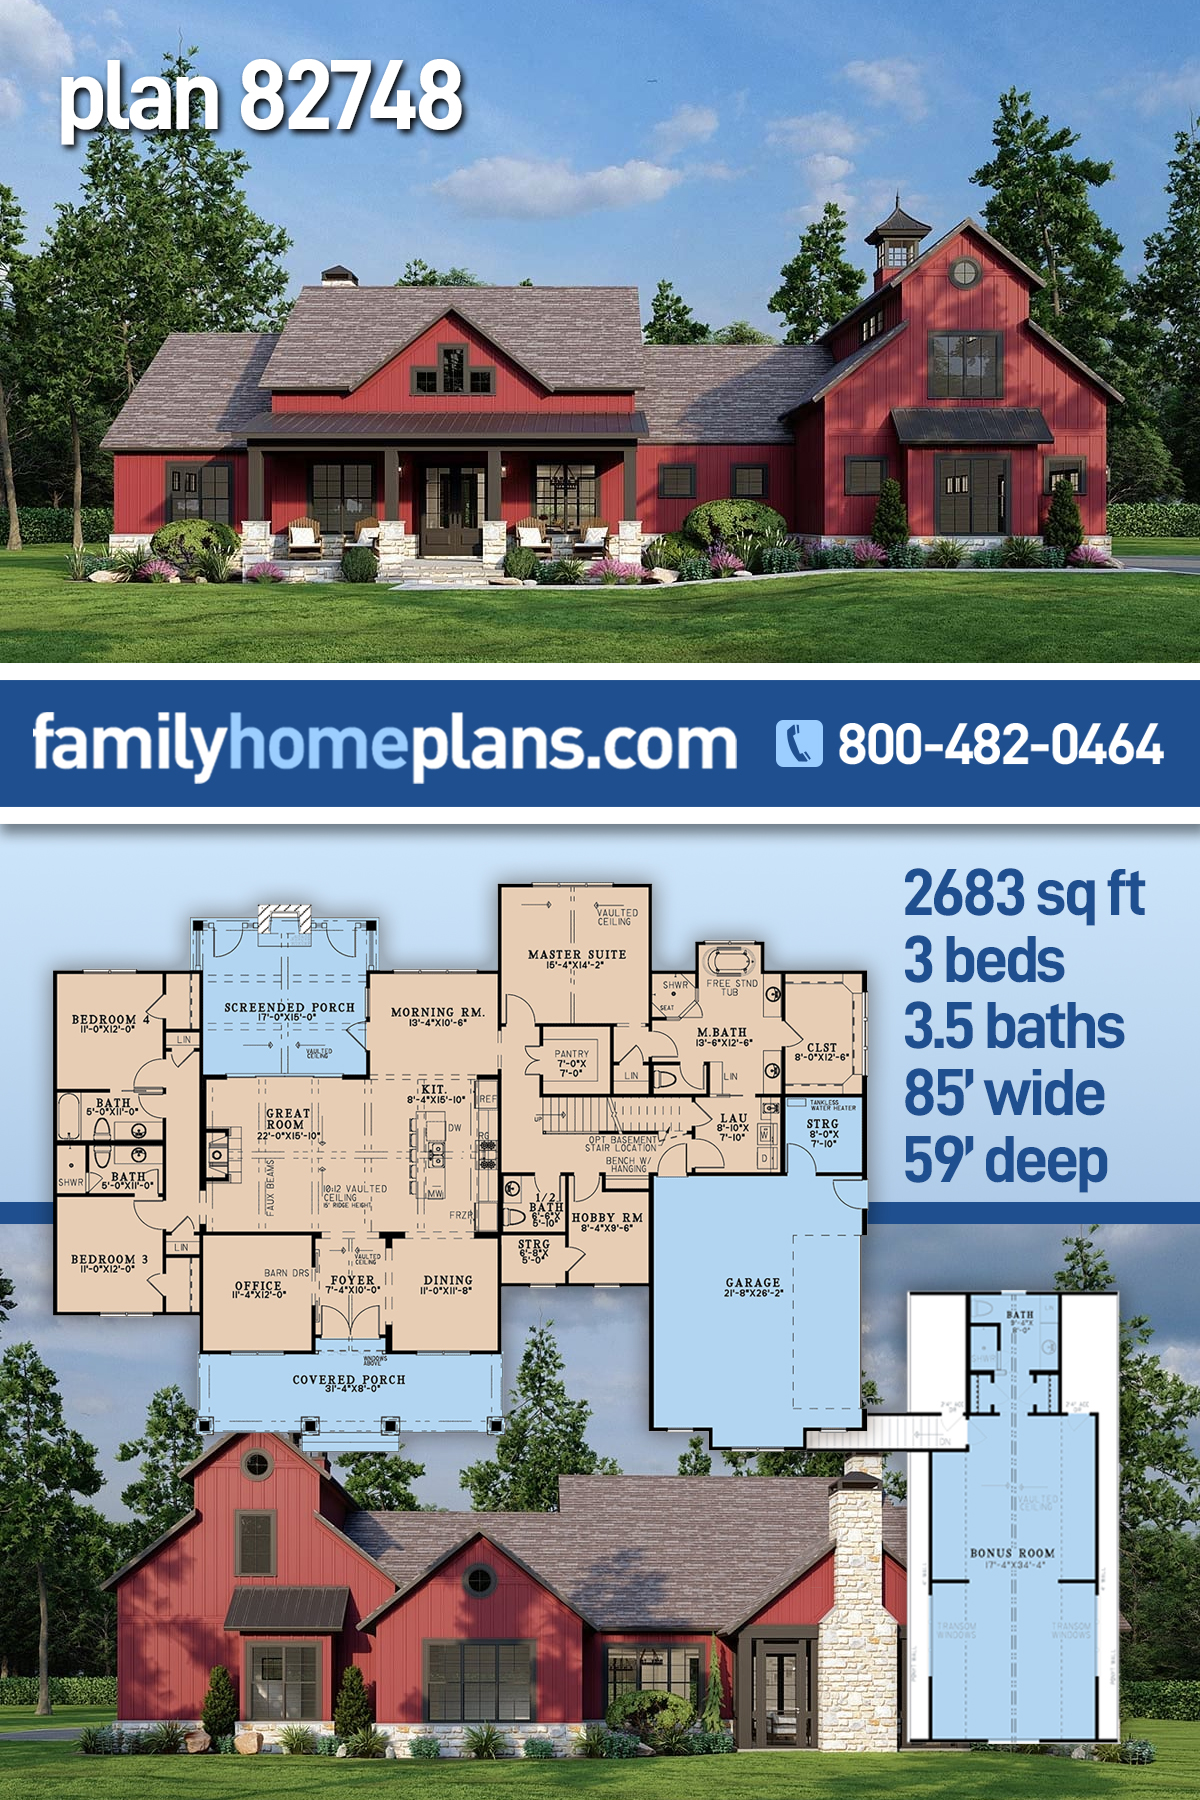 82748 - Family Home Plans Blog